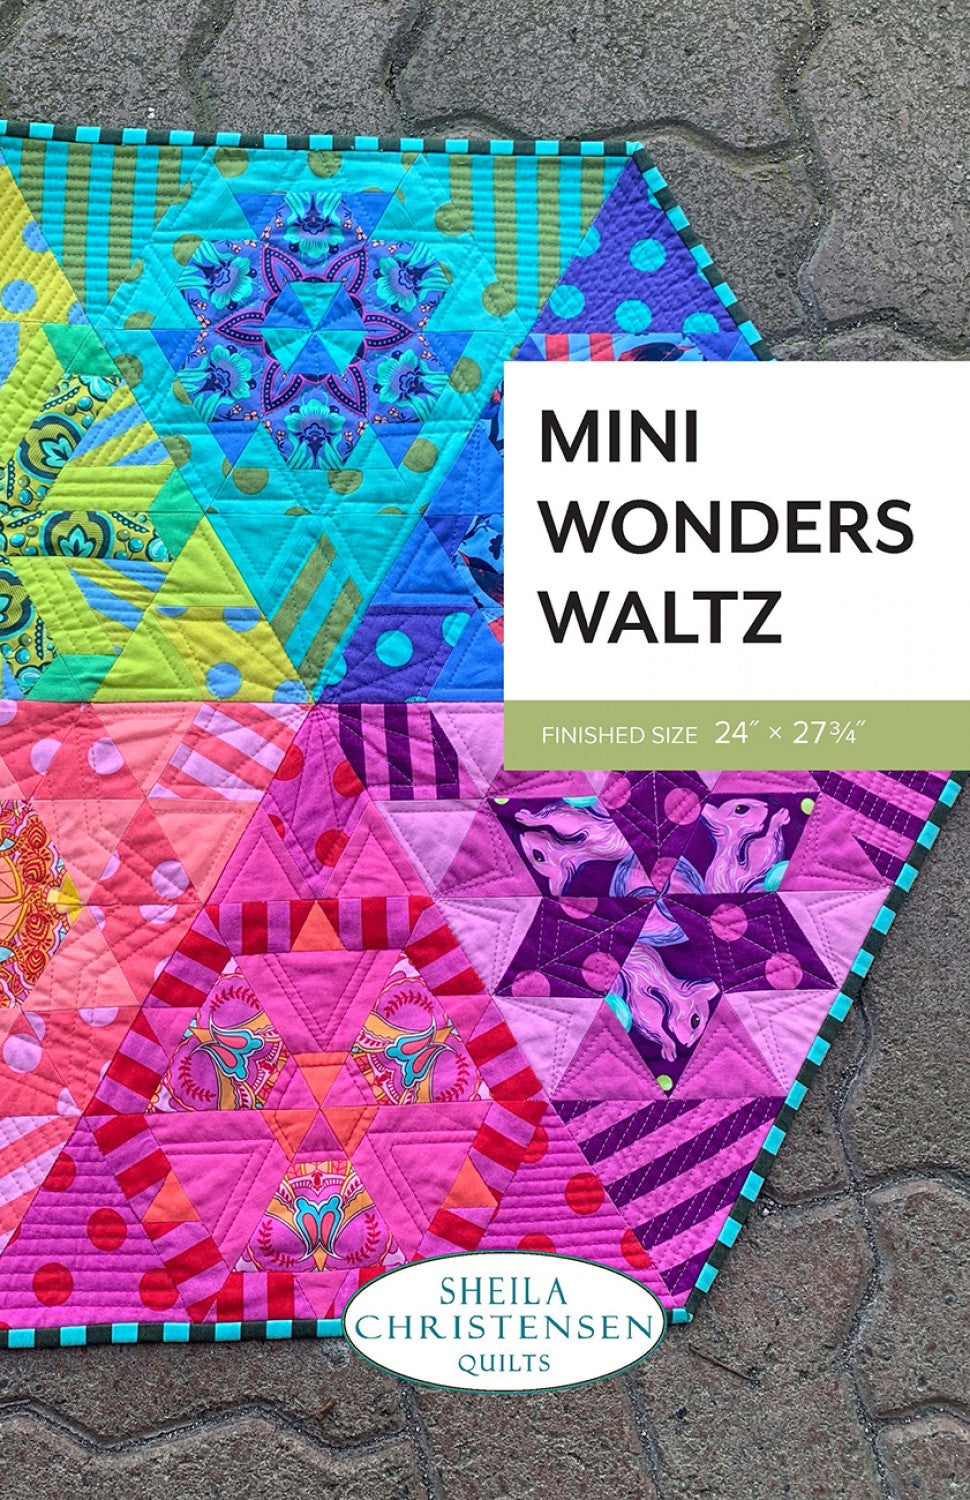 Mini Wonders Waltz